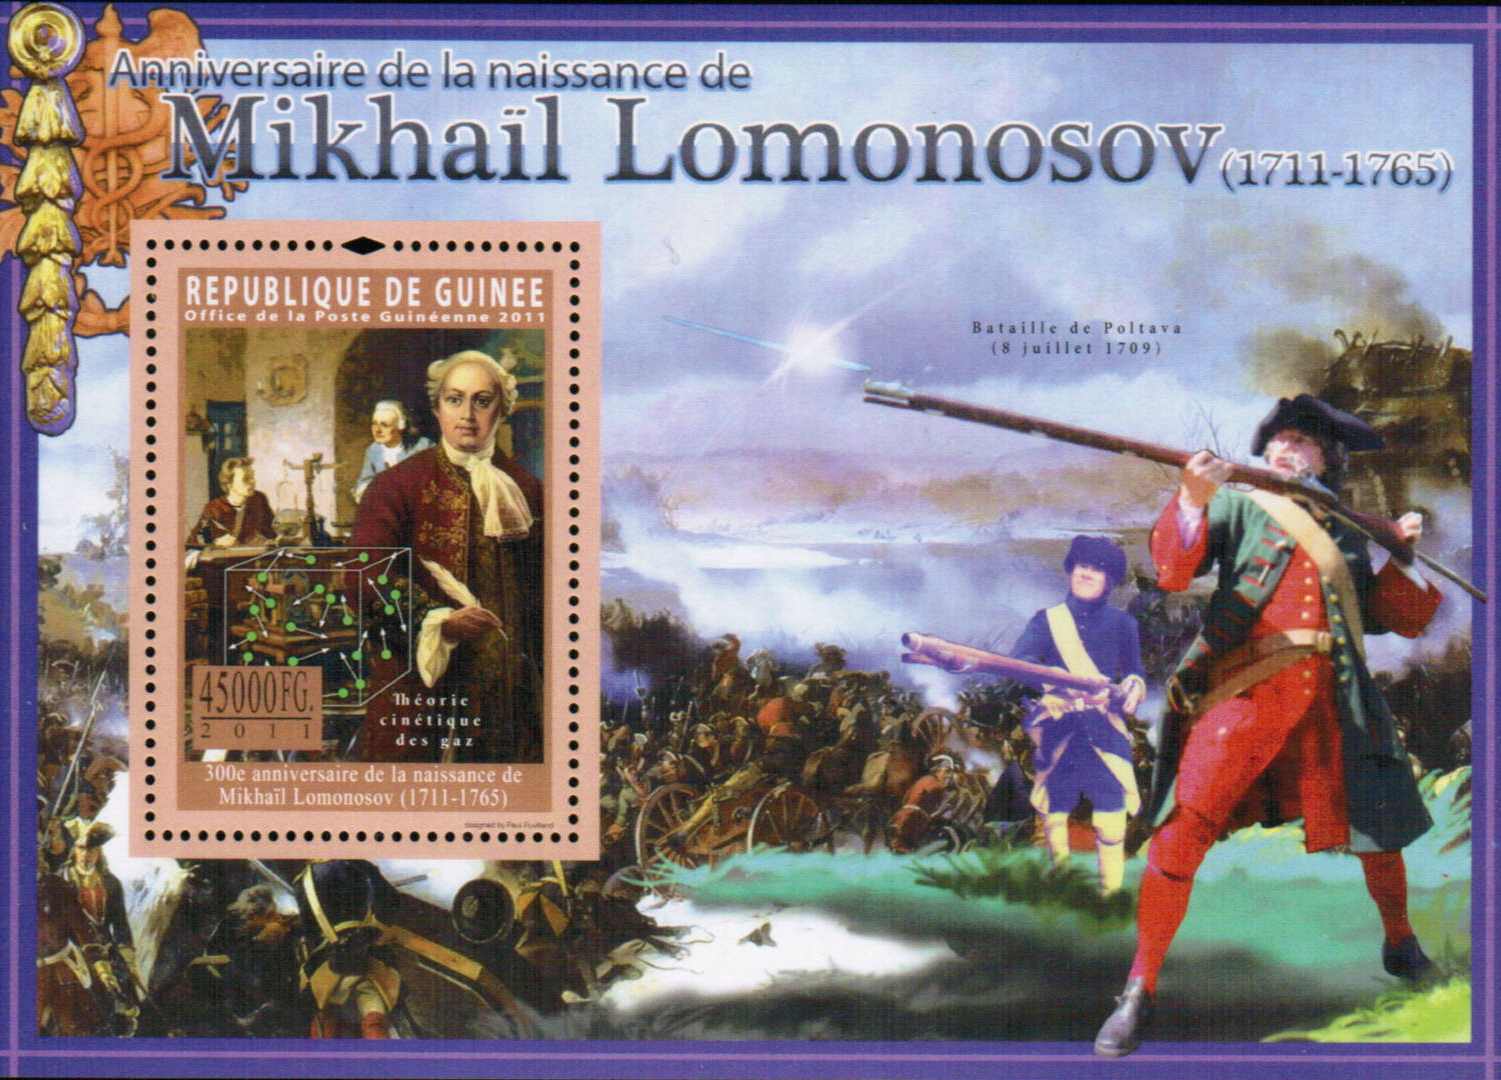 Mikhail Lomonosov, Battle at Poltava